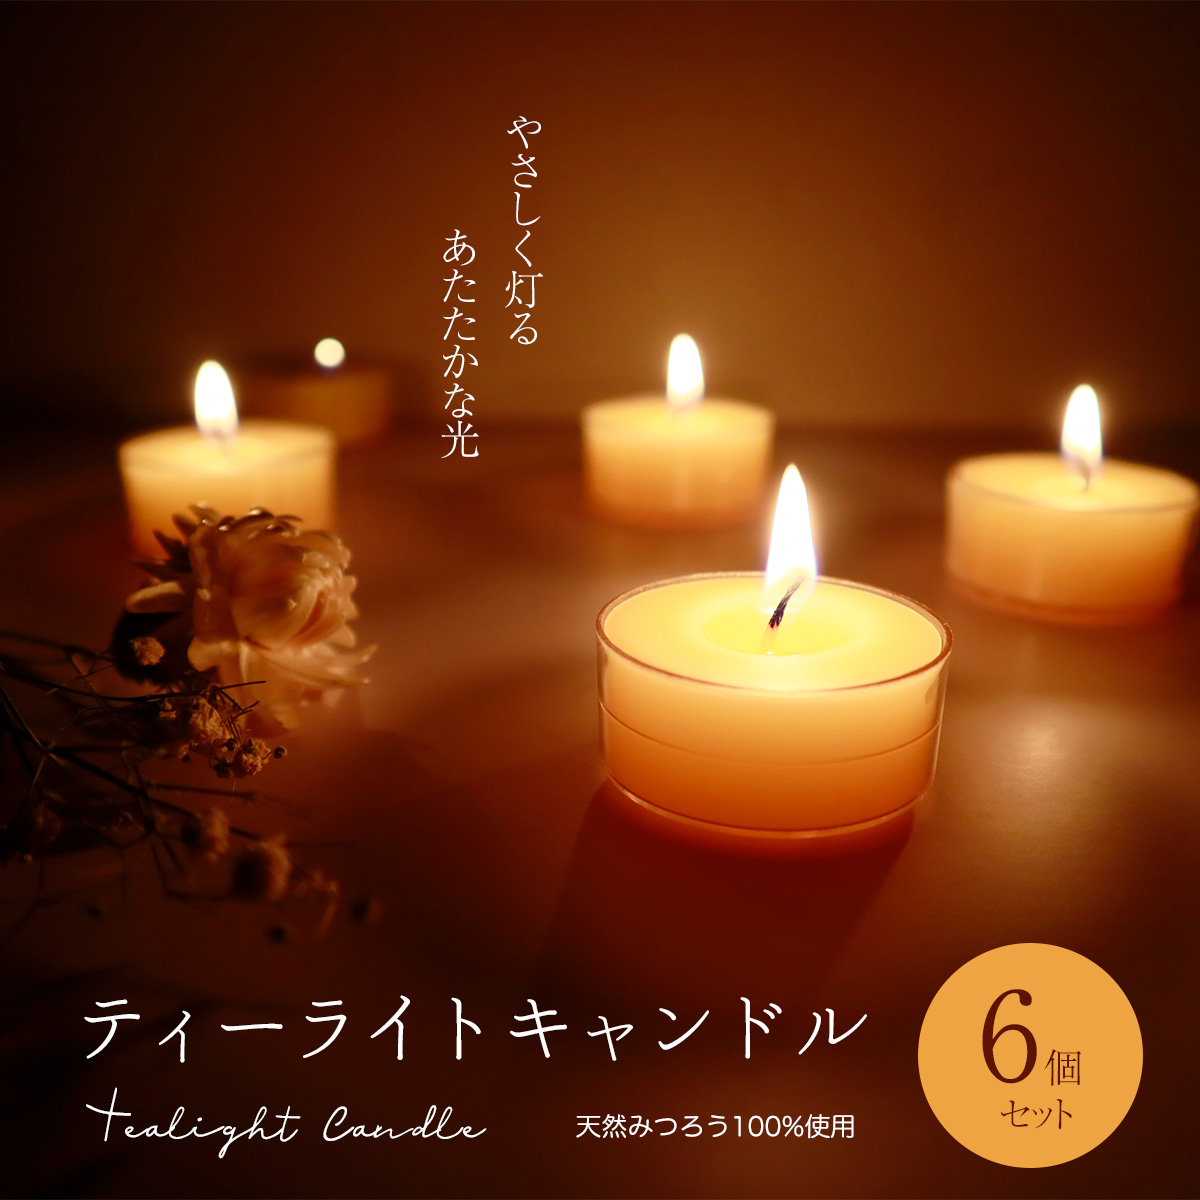 日本製 蜜蝋 ティーライトキャンドル 6個セット みつろう ミツロウ ろうそく 和ろうそく 蝋燭 ティーライトティン ヨガ ワックス  :tealightcandle6p:雑貨イズム 通販 